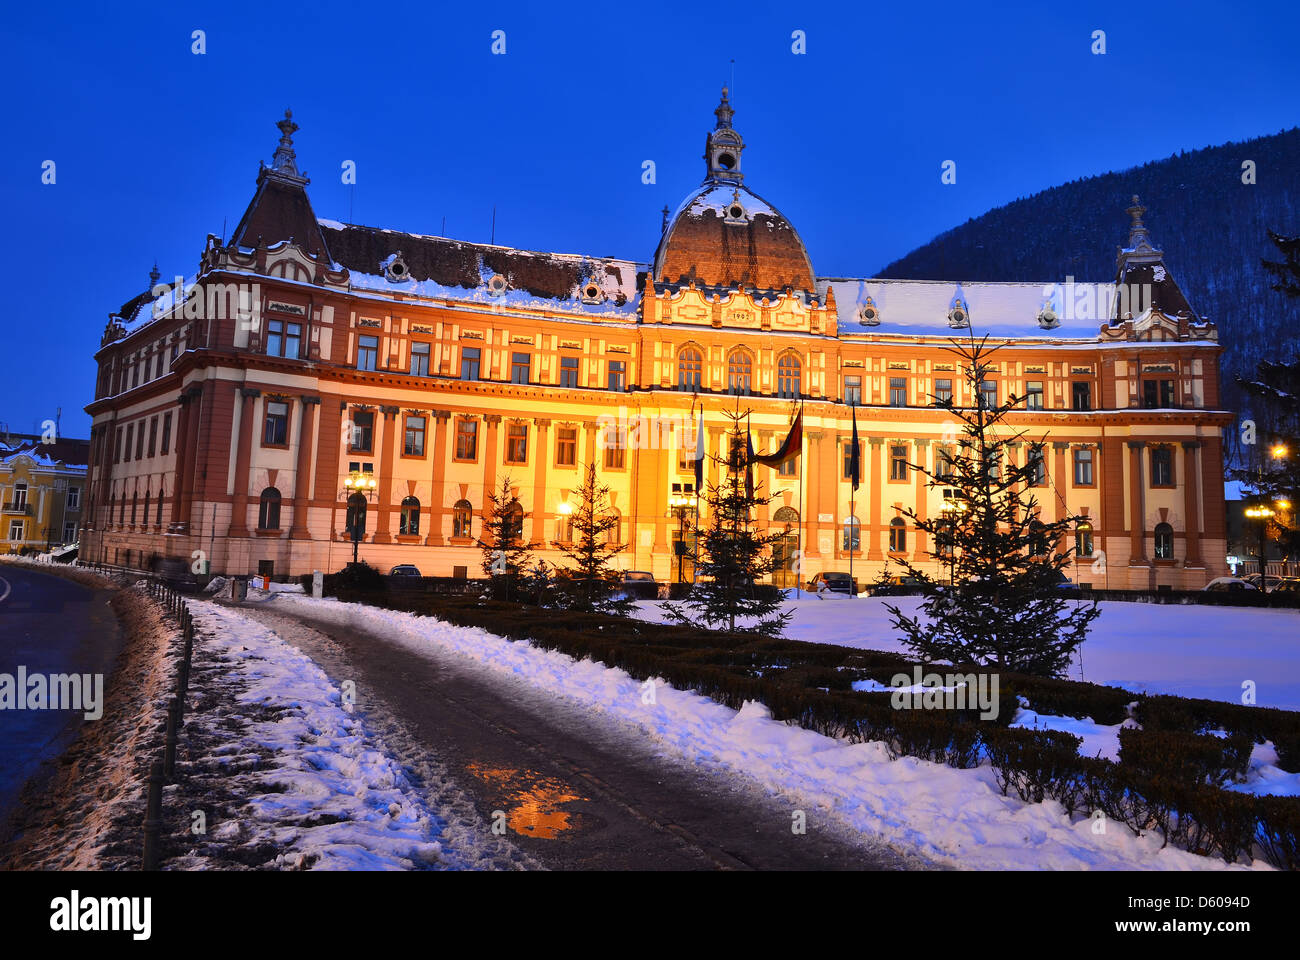 Gobierno del condado de Brasov. Edificio de la administración central del condado de Brasov, en Rumania. Foto de stock